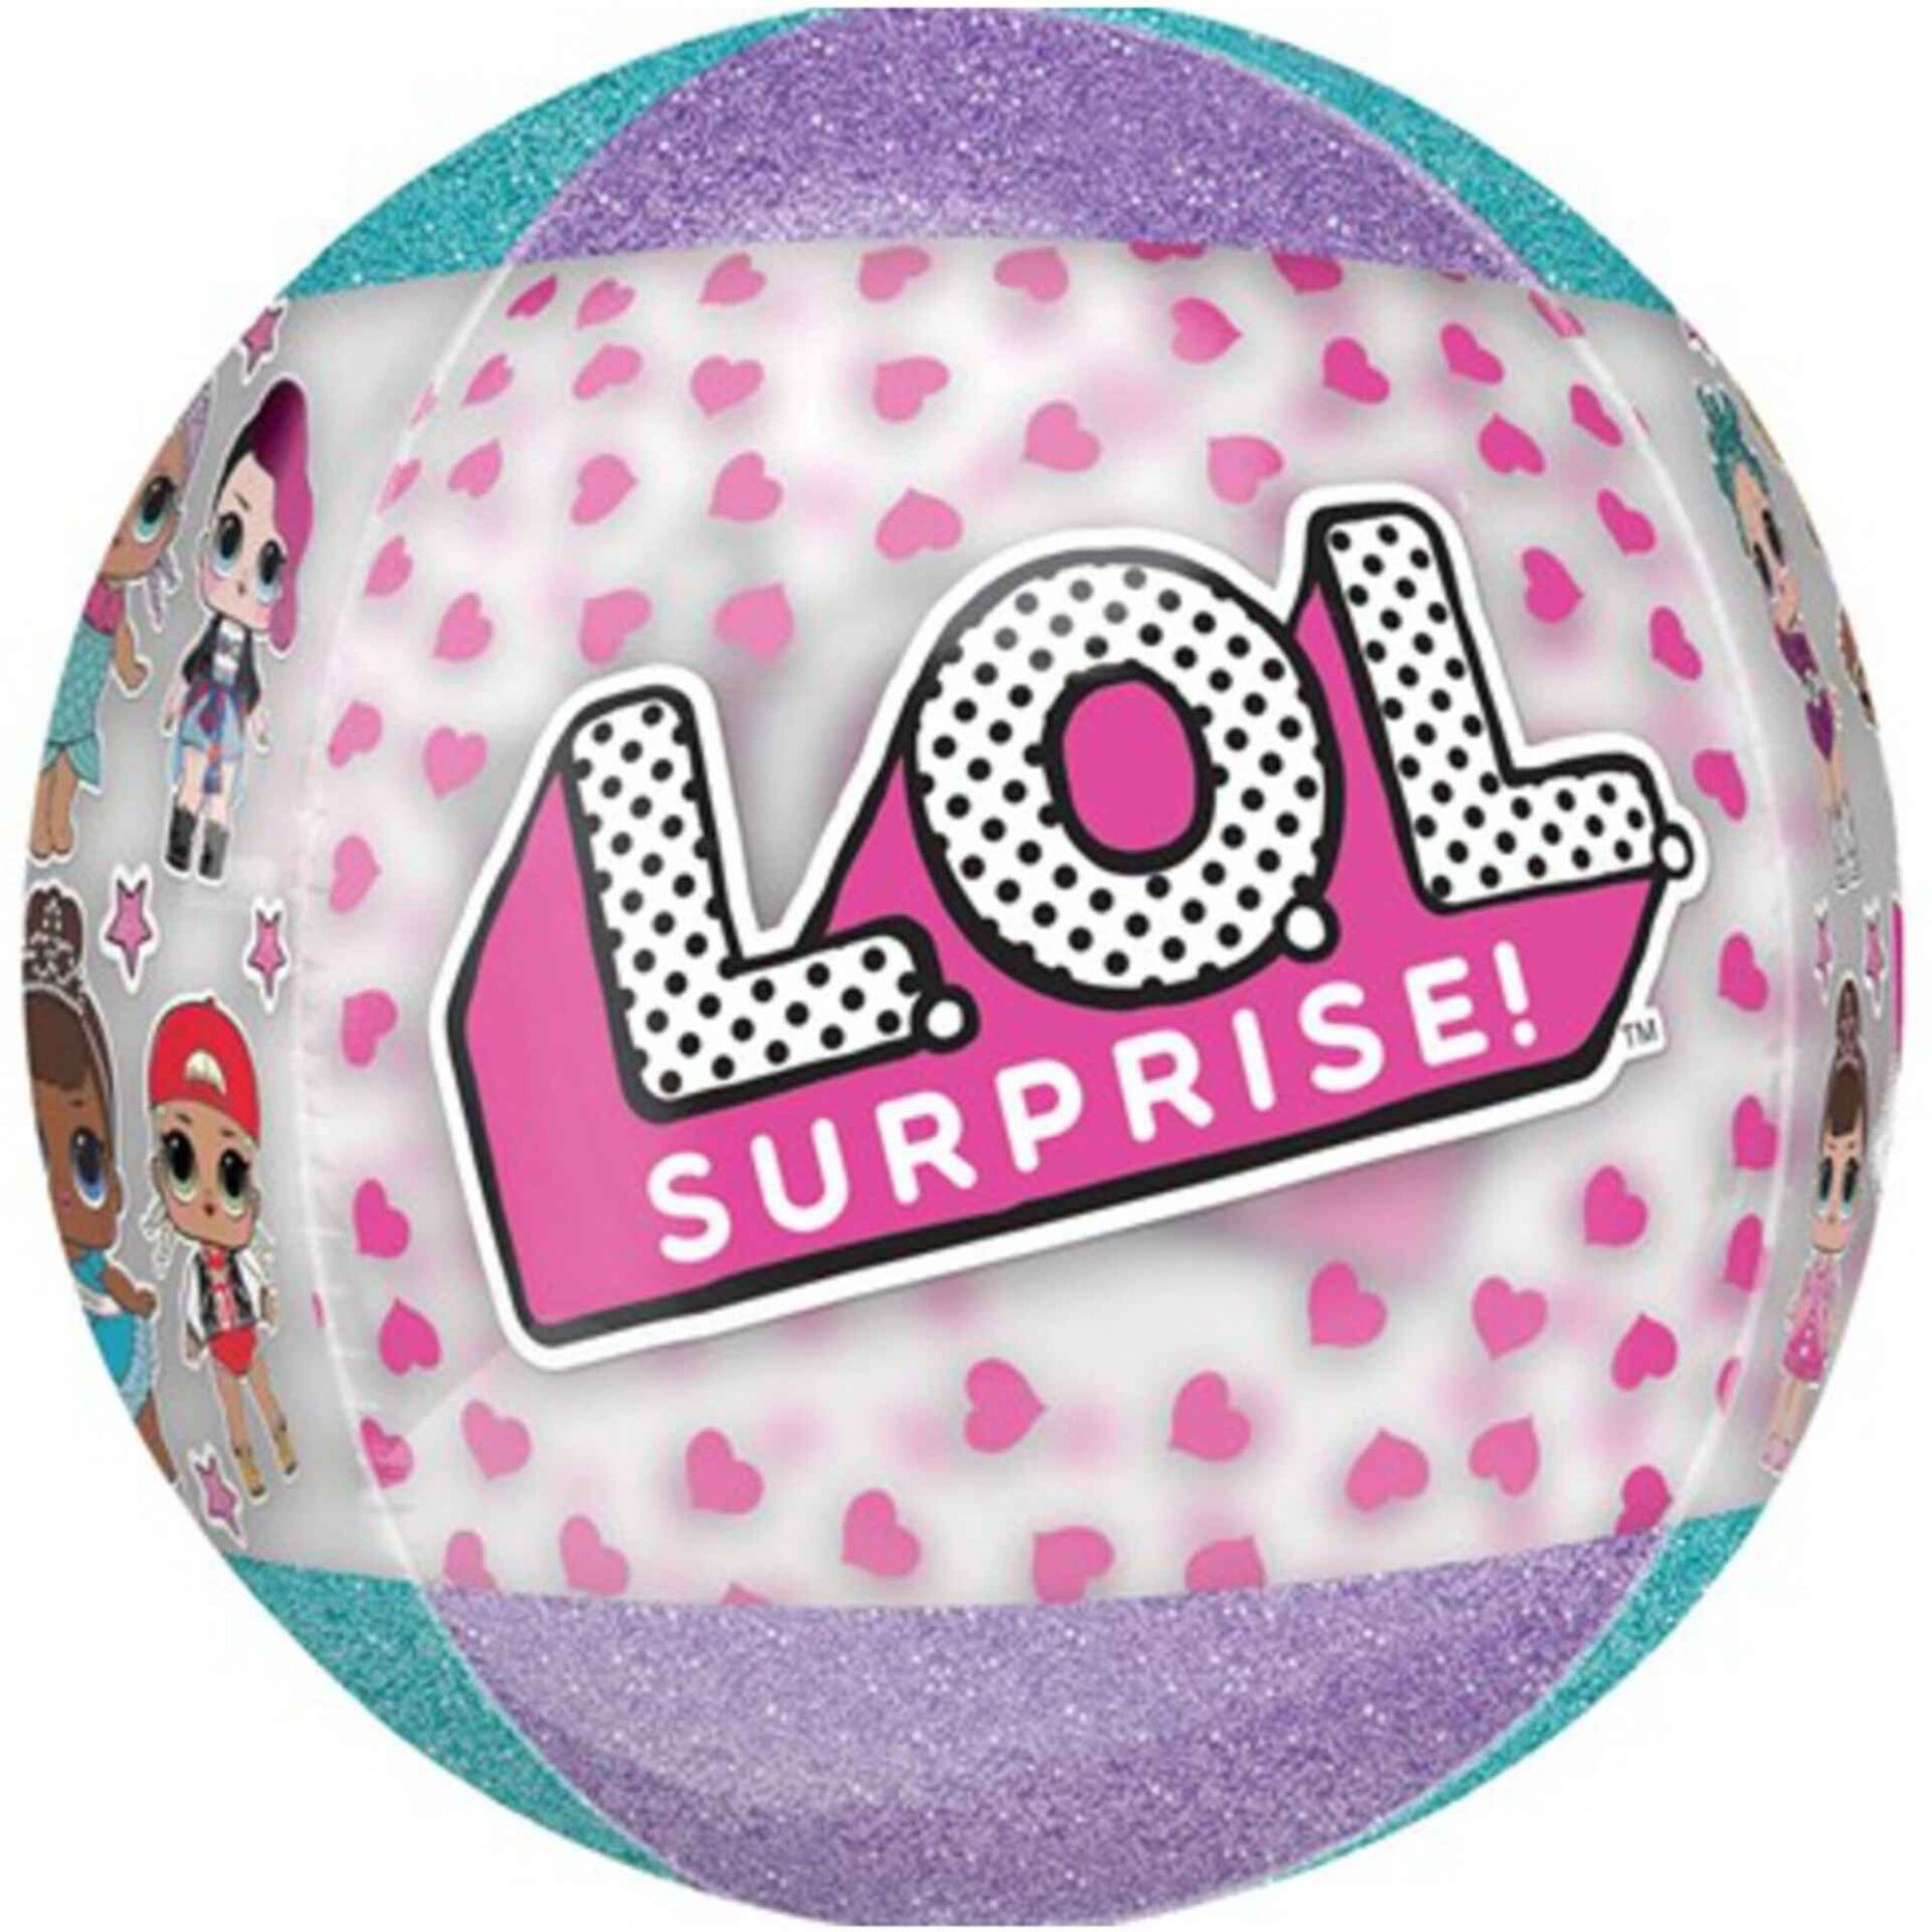 Balão Foil Bola L.O.L. Surprise!